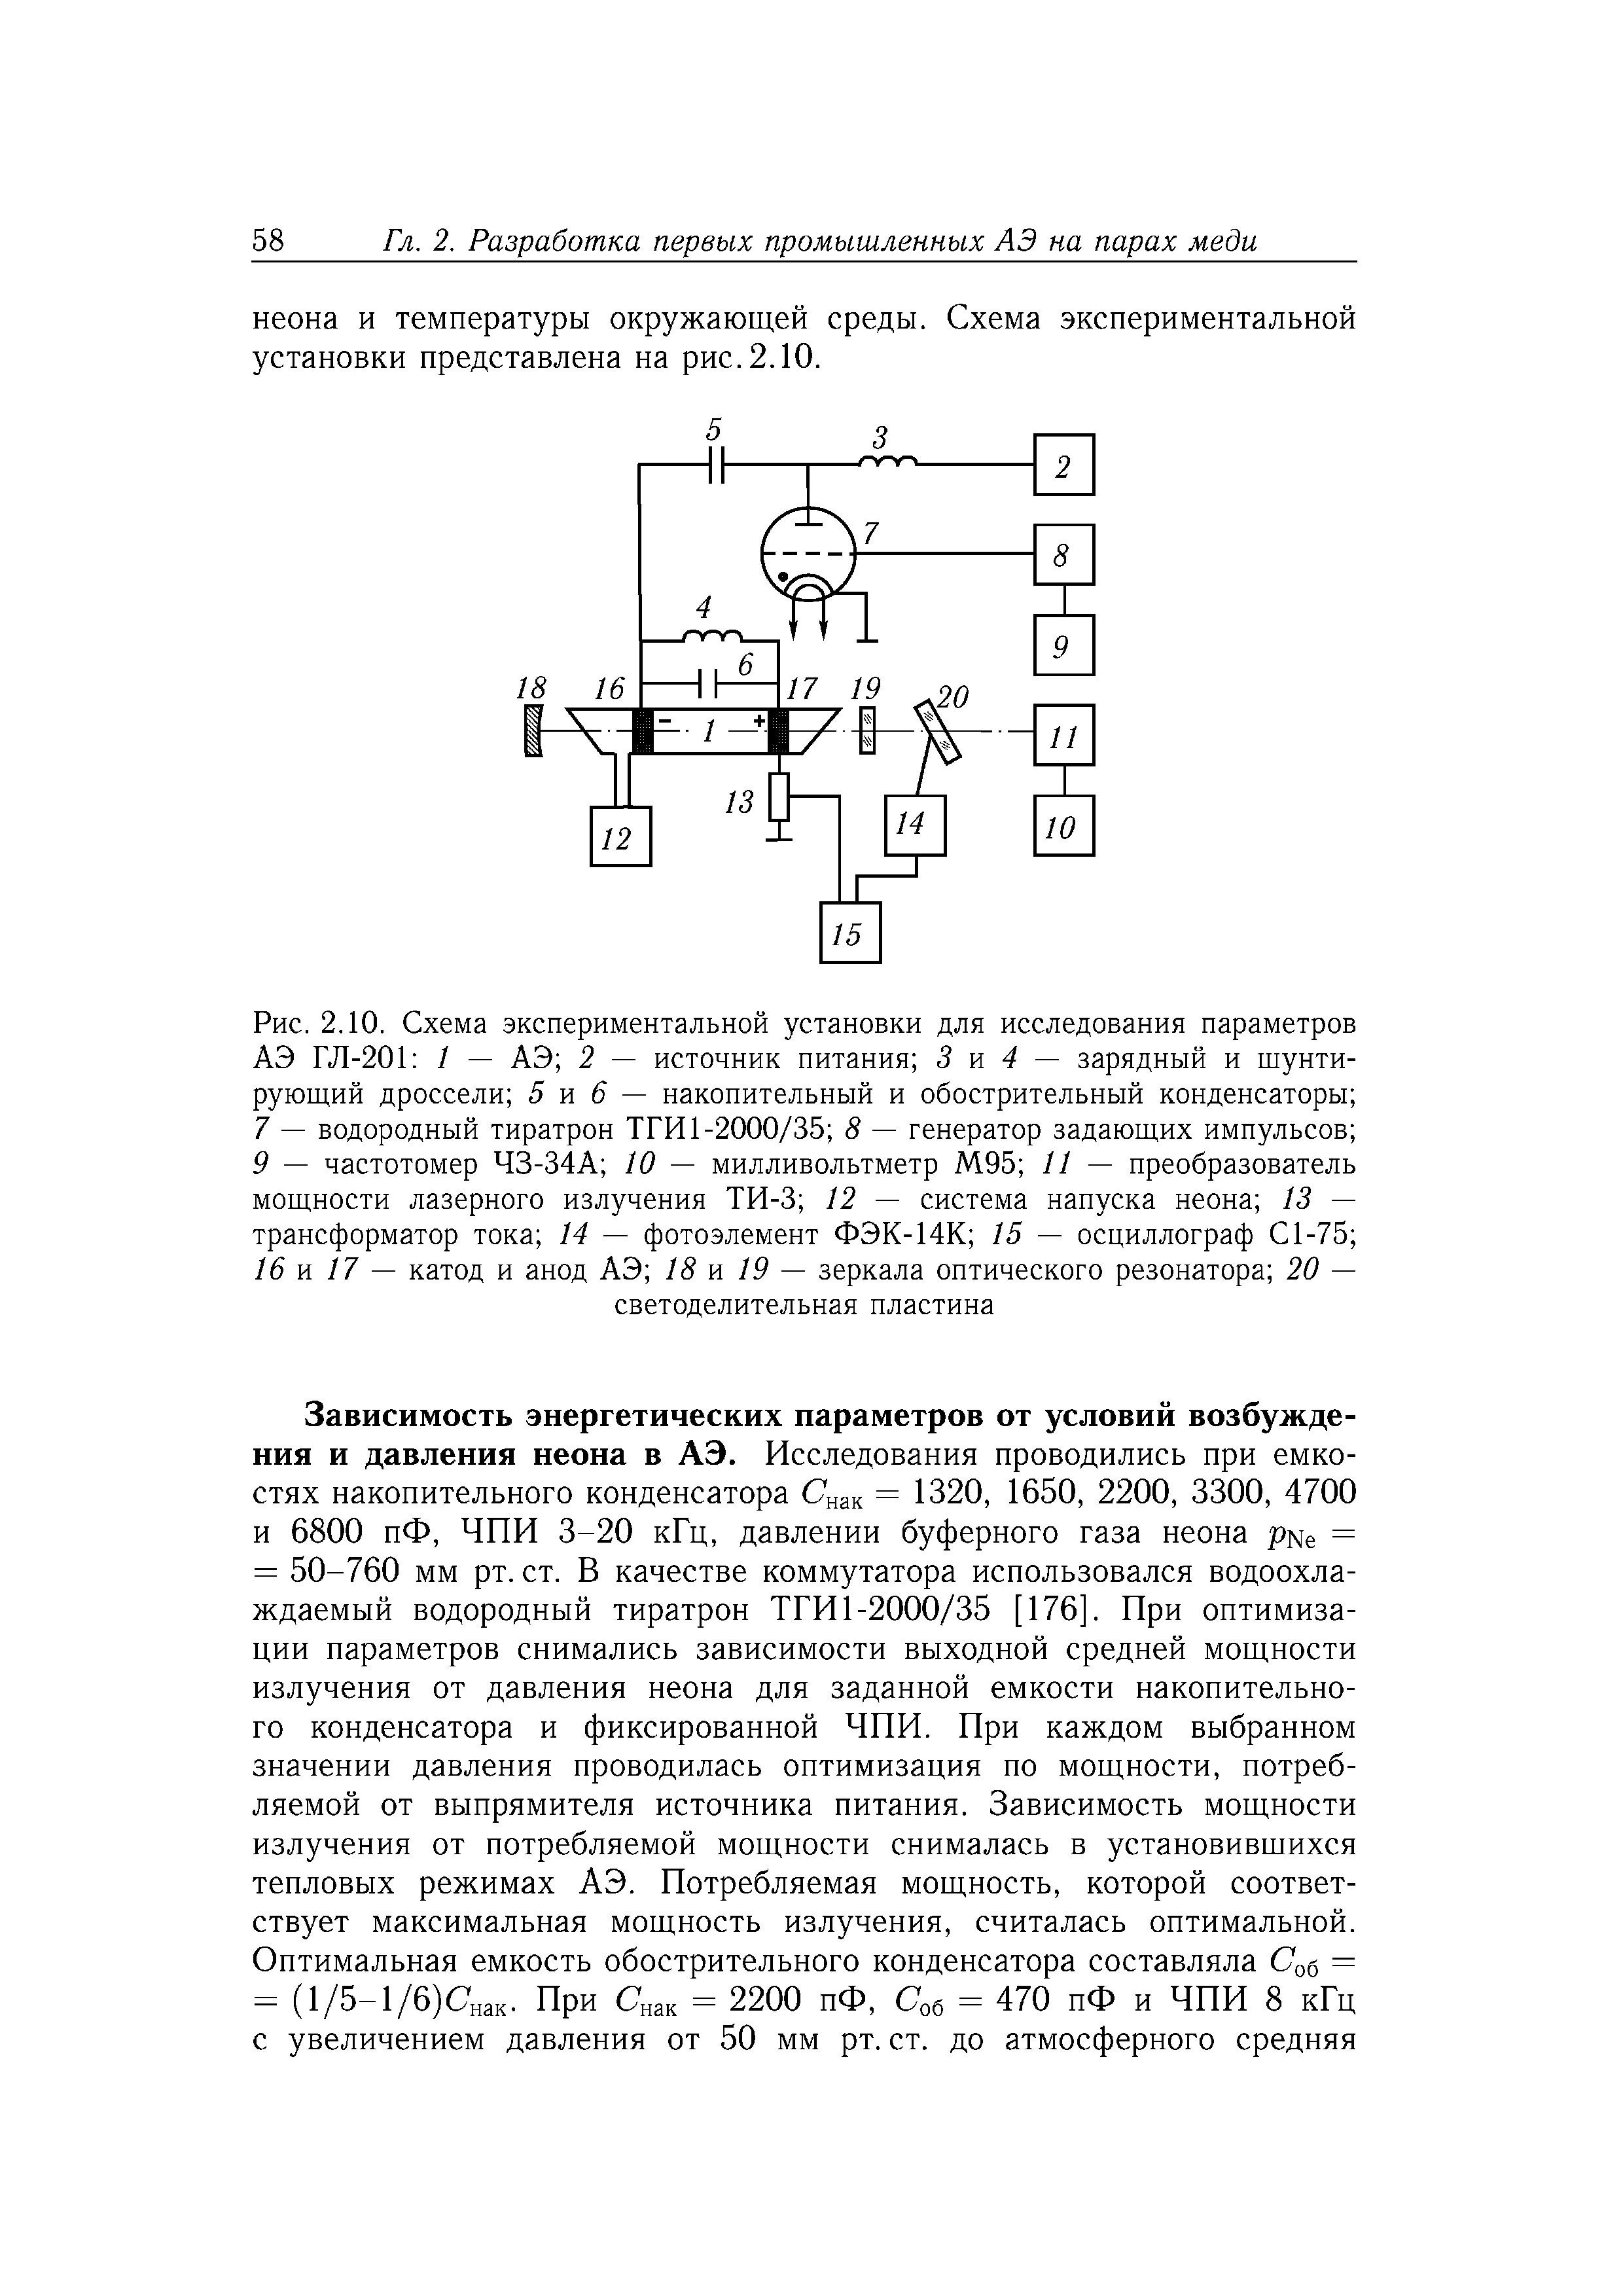 Рис. 2.10. Схема <a href="/info/127210">экспериментальной установки</a> для исследования параметров АЭ ГЛ-201 1 — АЭ 2 — <a href="/info/121496">источник питания</a> 3 м 4 — зарядный и шунтирующий дроссели 5 и б — накопительный и обострительный конденсаторы 7 — водородный тиратрон ТГИ1-2000/35 8 — генератор задающих импульсов 9 — частотомер ЧЗ-34А 10 — милливольтметр М95 11 — преобразователь мощности <a href="/info/178413">лазерного излучения</a> ТИ-3 12 — система напуска неона 13 — <a href="/info/69649">трансформатор тока</a> 14 — фотоэлемент ФЭК-14К 15 — осциллограф С1-75 16 и 17 — катод и анод АЭ 18 м 19 — <a href="/info/402197">зеркала оптического</a> резонатора 20 —
